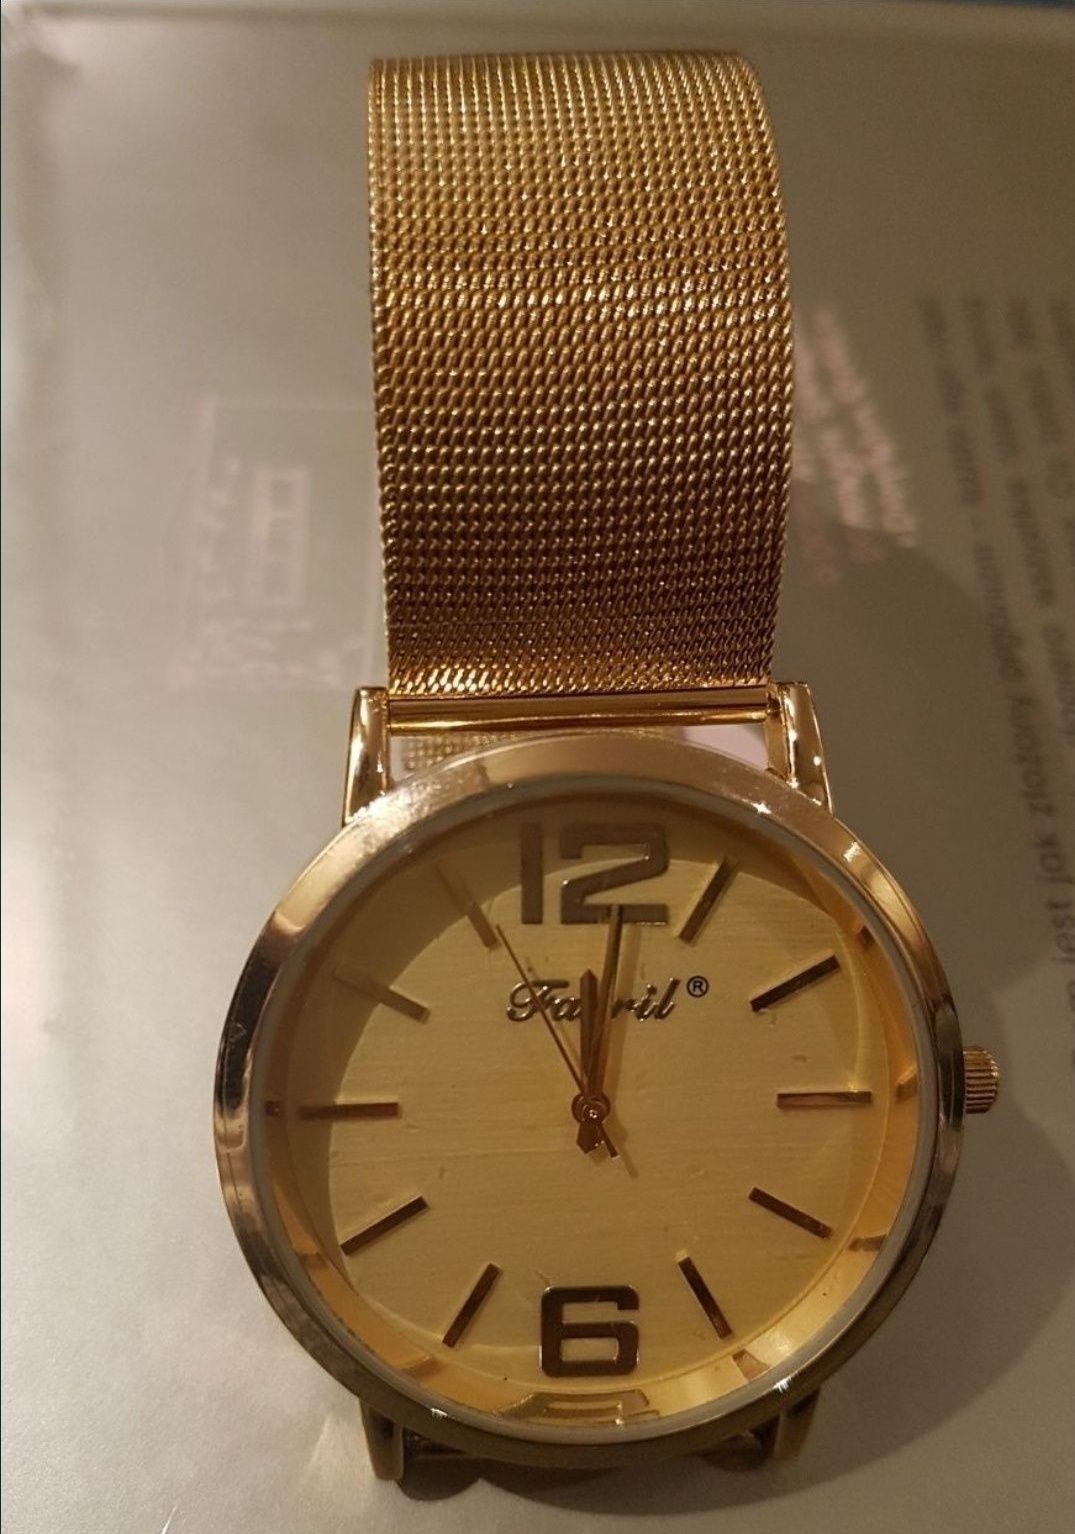 Stylowy zegarek damski firmy Farril